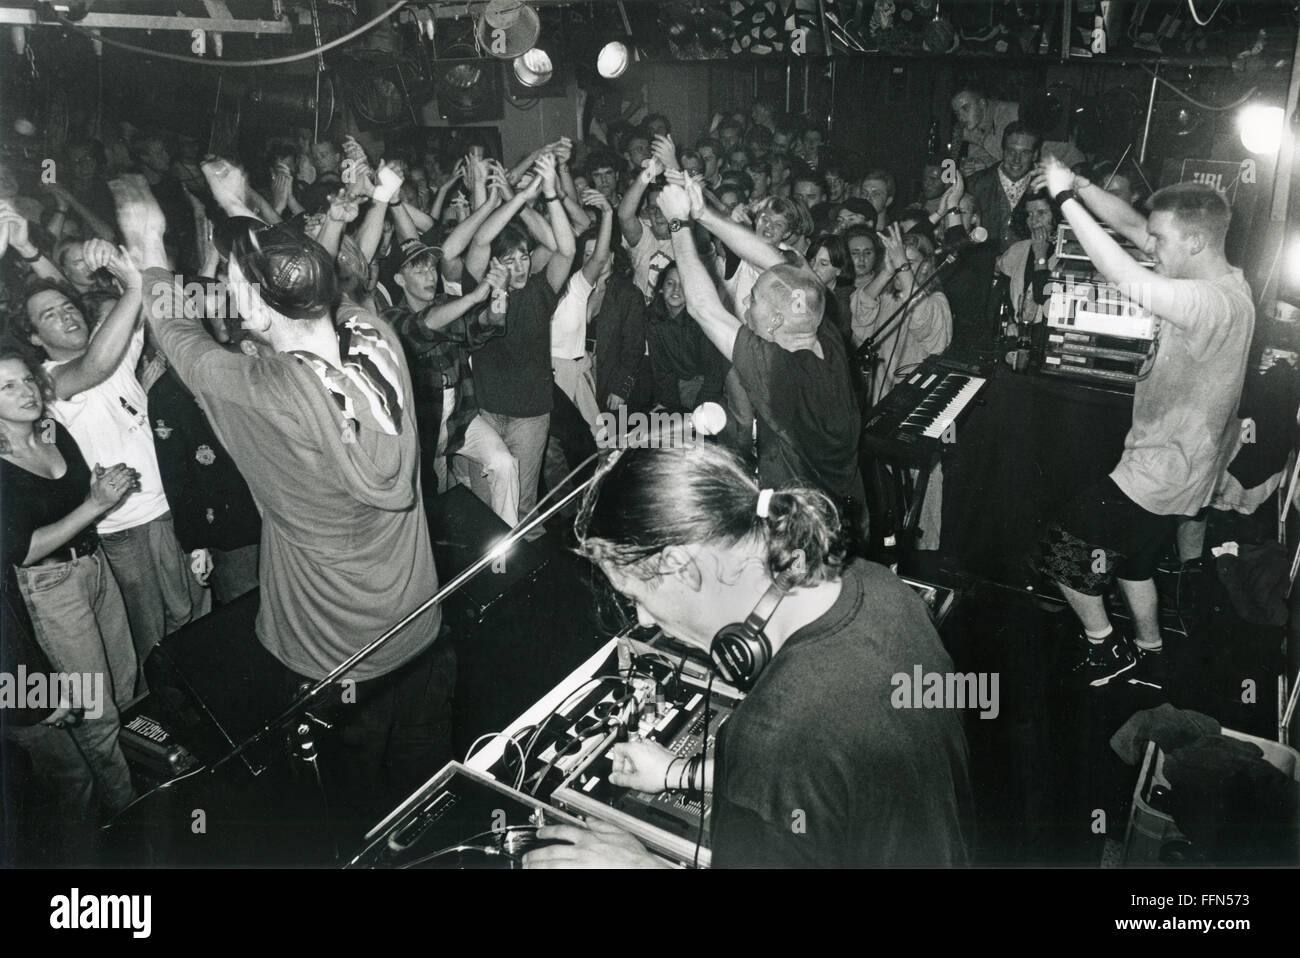 Les Quatre Fantastiques, groupe de musique allemande (rap, hip-hop), spectacle de scène dans une discothèque près de Passau, au début de leur carrière, après leur premier succès de carte avec le single 'nie Da!?!', hors du premier album '4 gewinnt', Passau, Allemagne, 1992, Banque D'Images